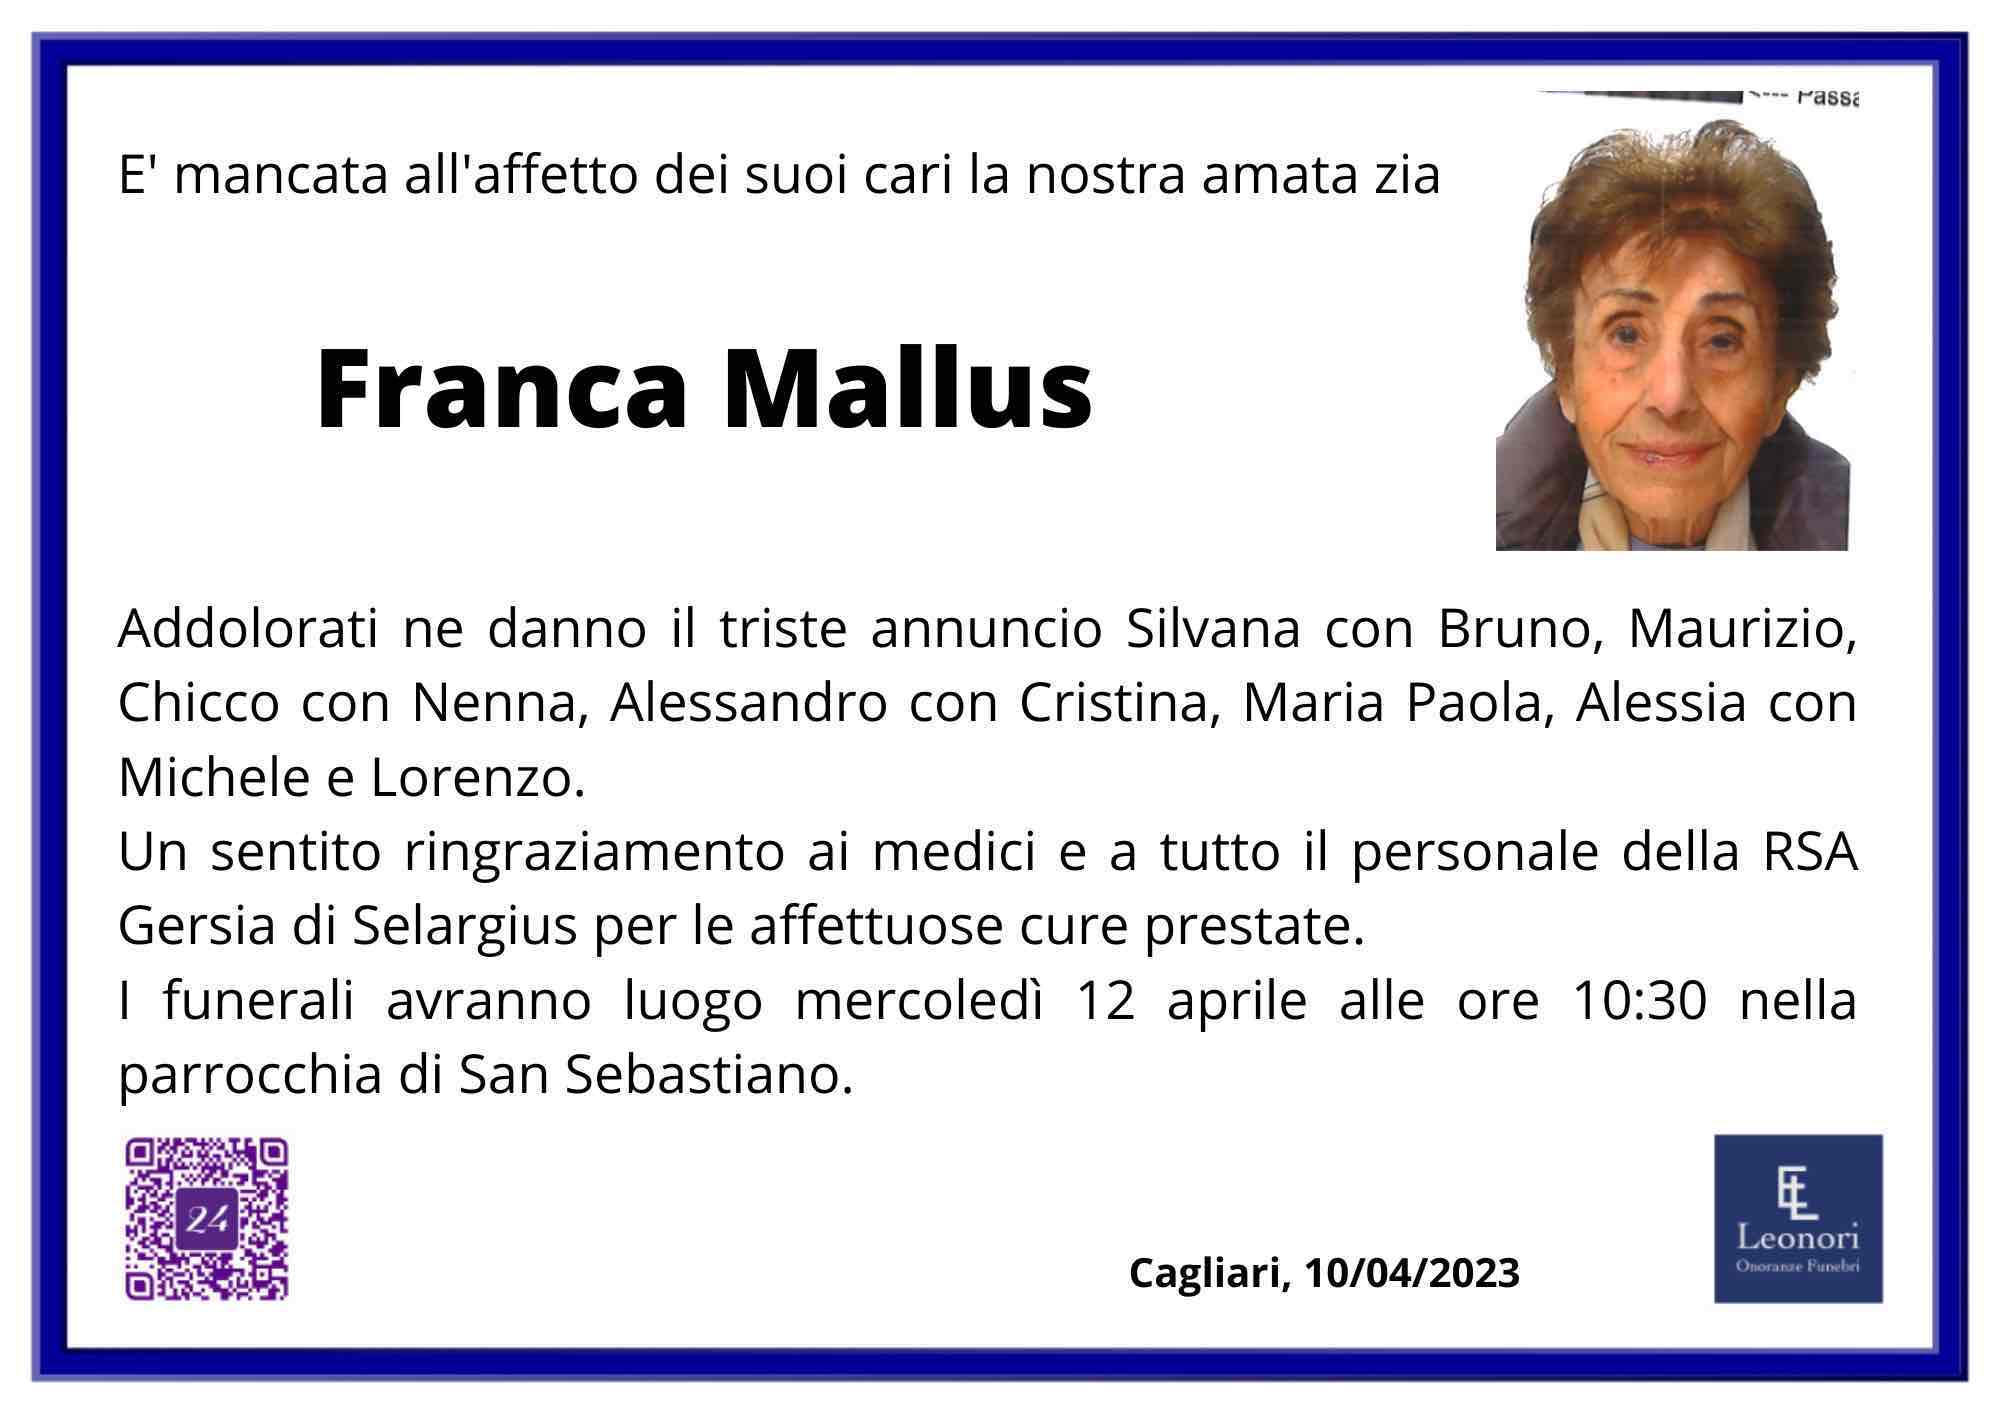 Franca Mallus